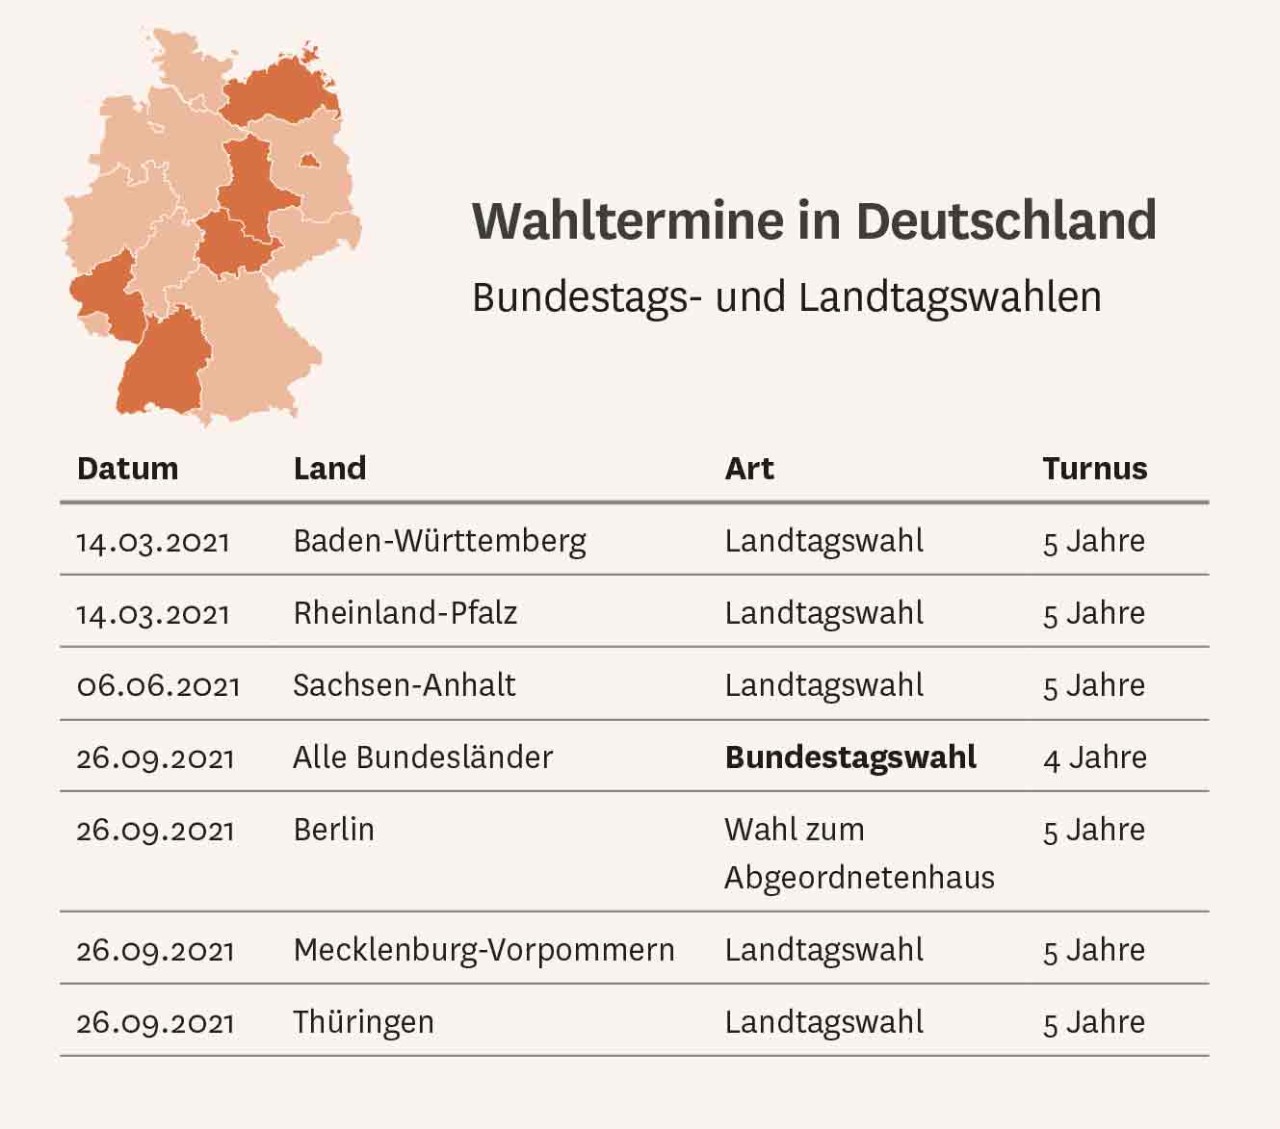 Grafik: Wahltermin in Deutschland, Bundestag- und Landtagswahlen